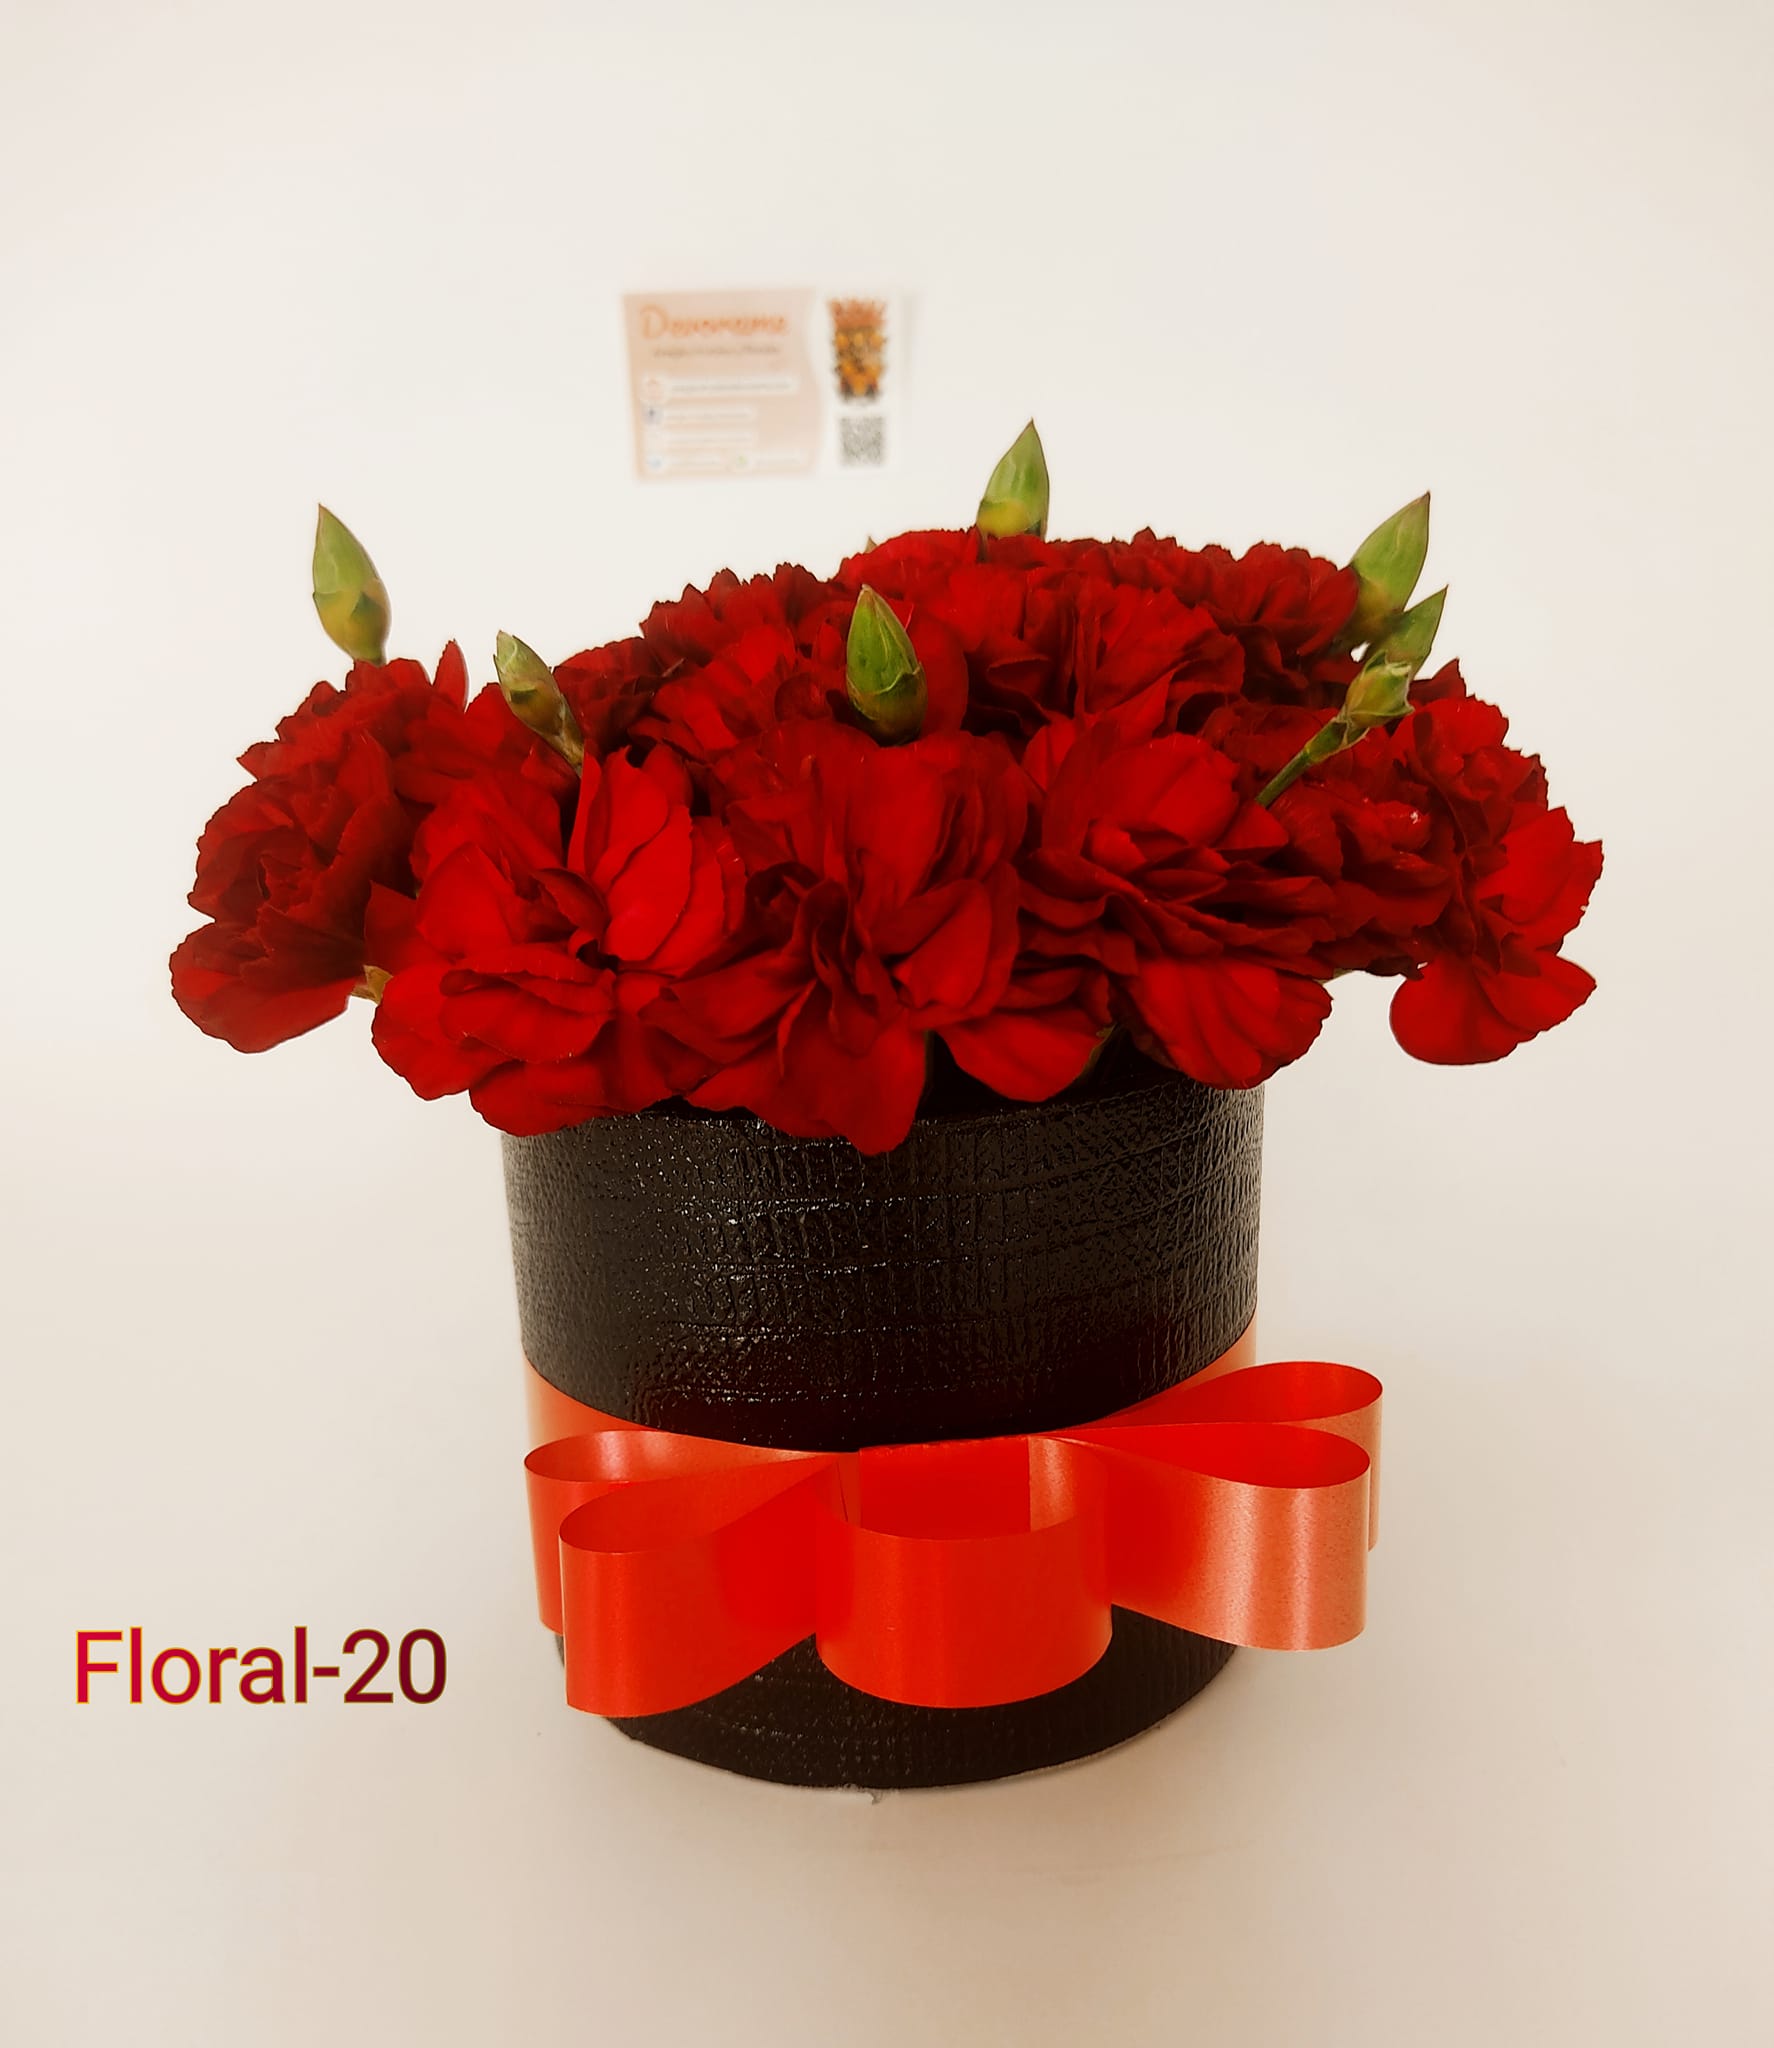 Arreglo frutal Floral-20 devorame